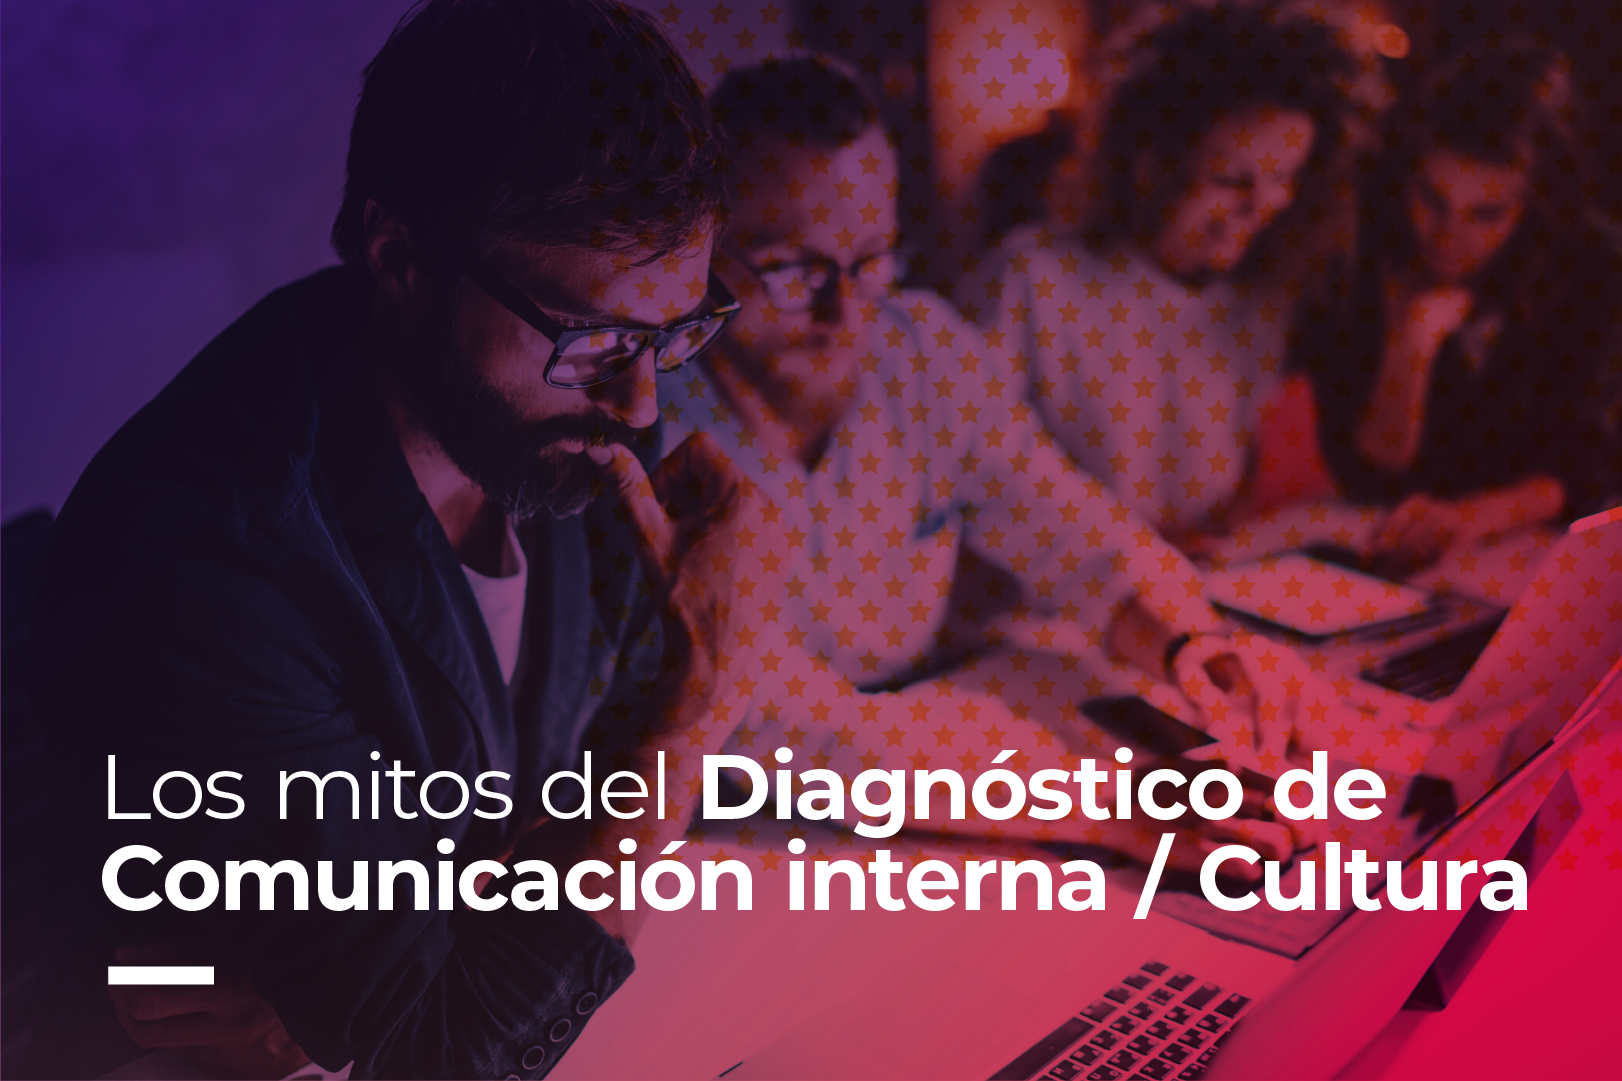 Los mitos del Diagnóstico de Comunicación Interna / Cultura